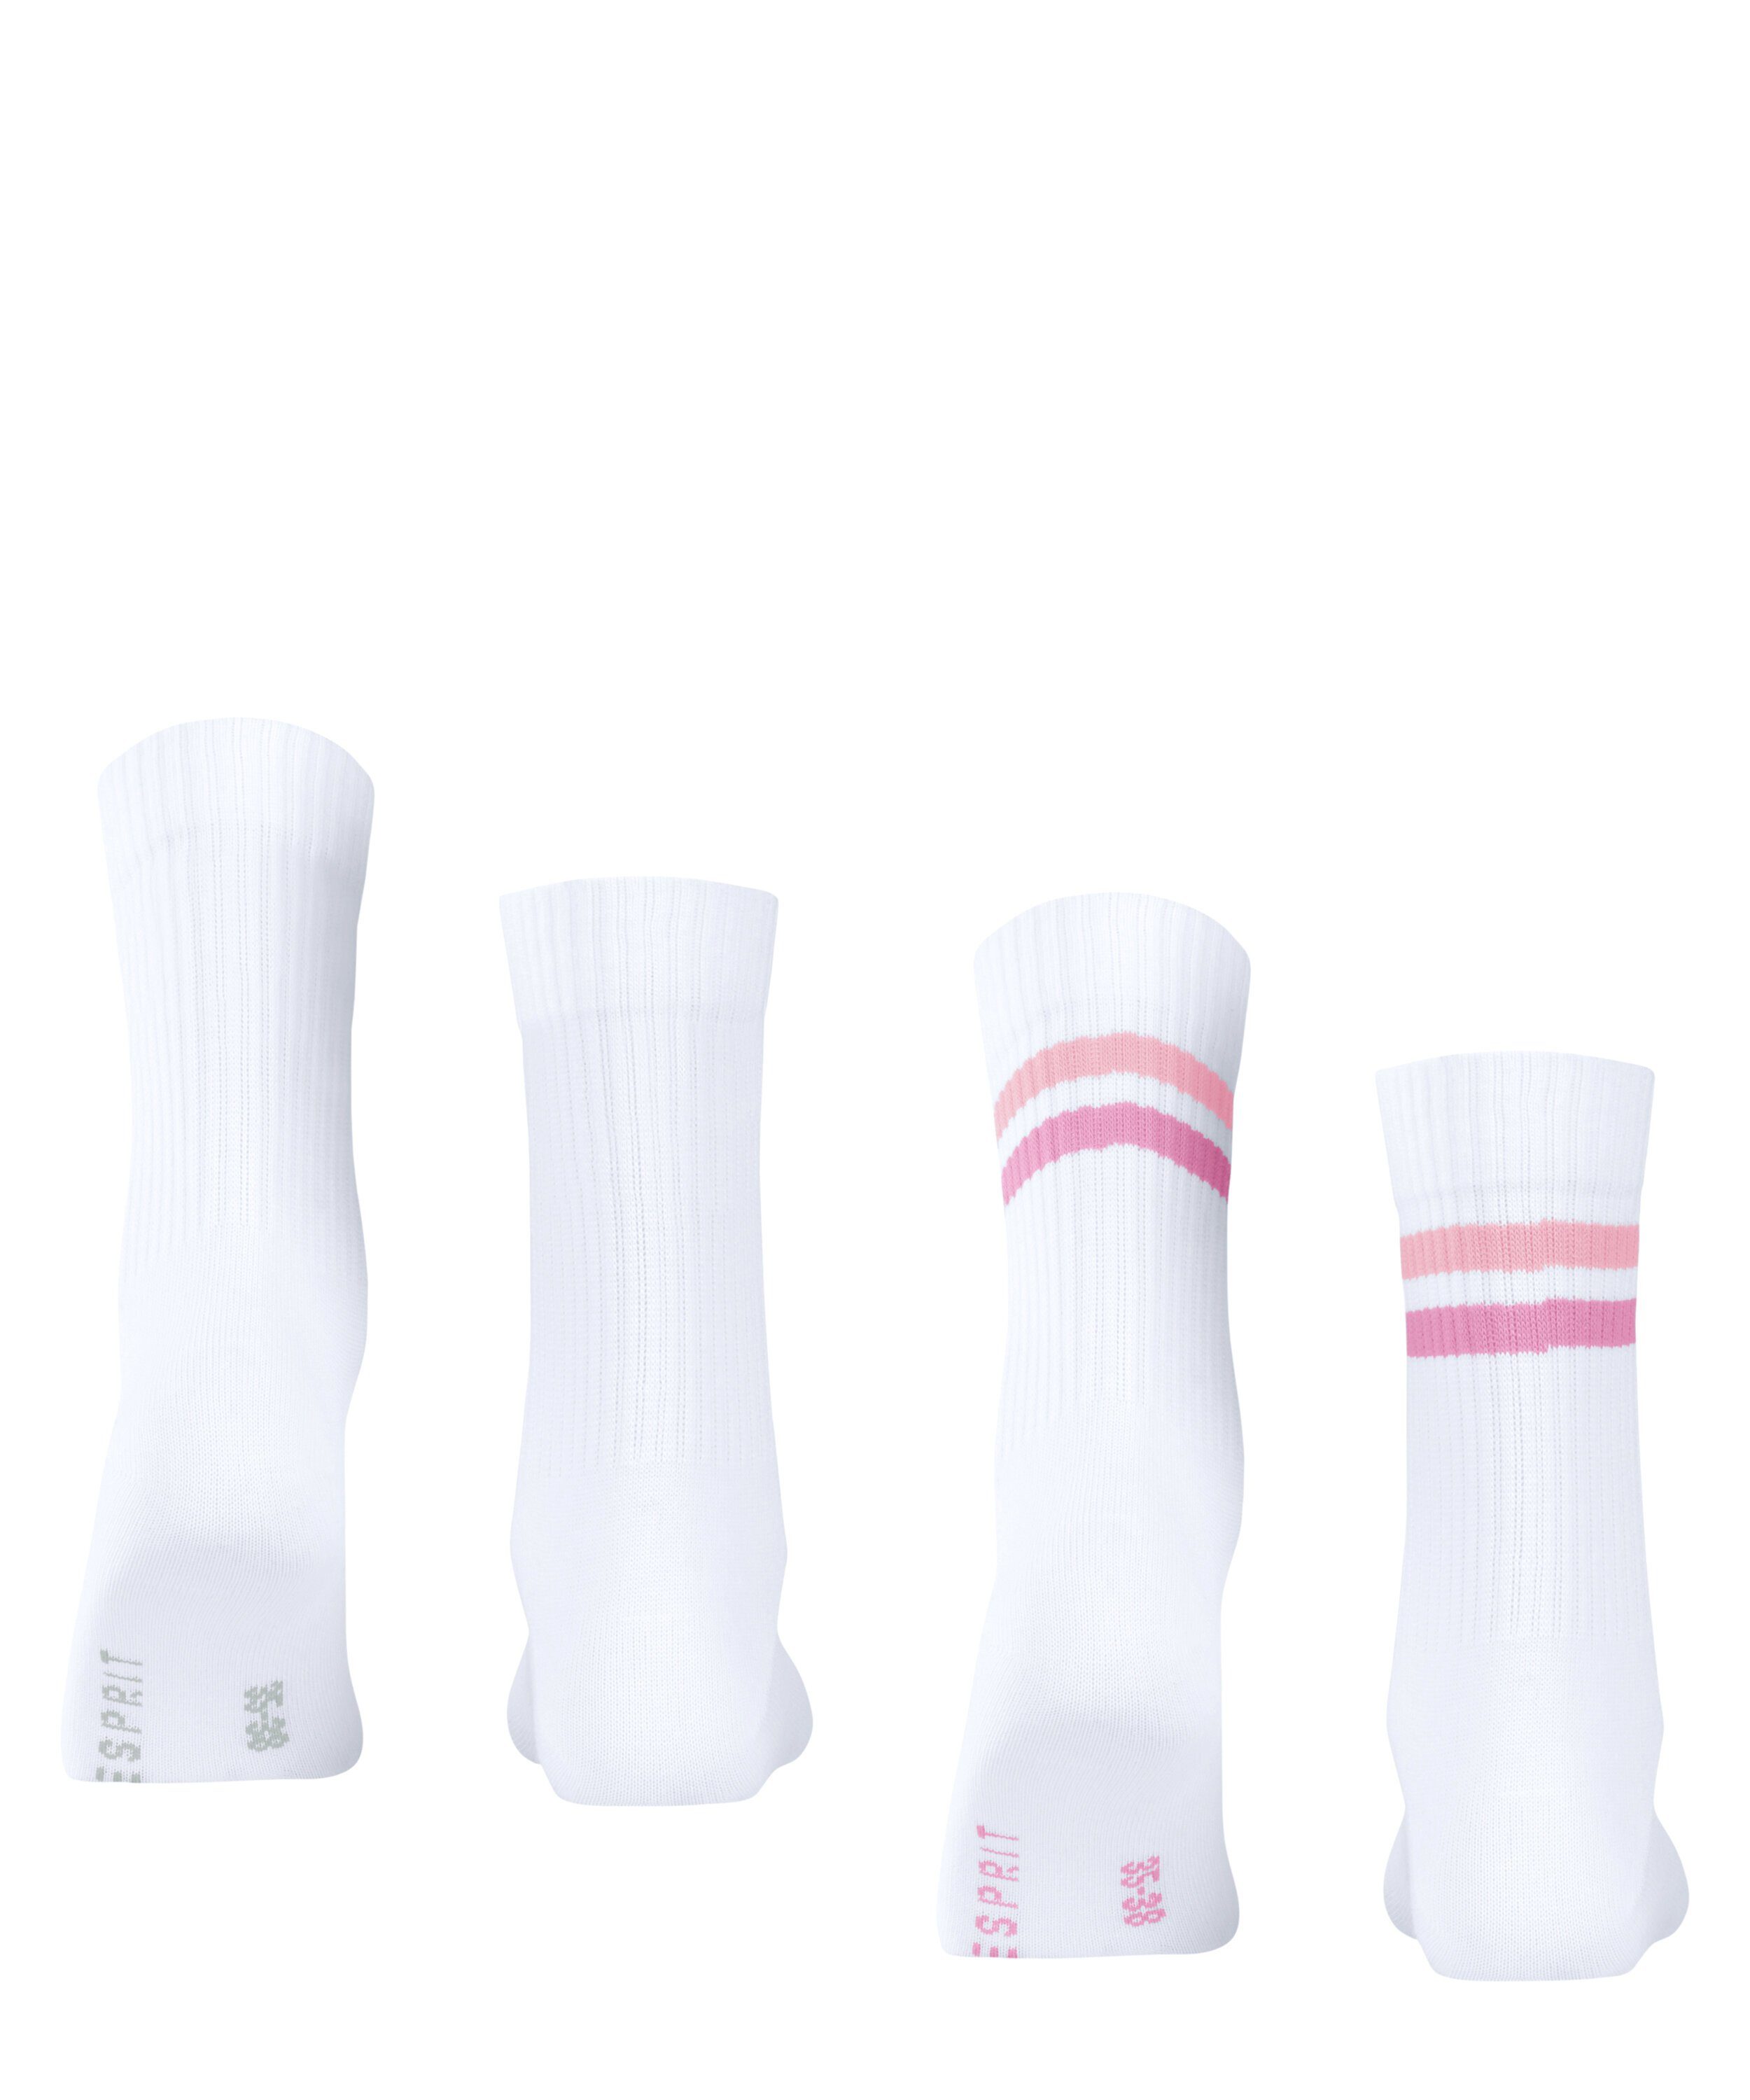 Esprit (2060) Tennis 2-Pack (2-Paar) Socken Stripe woolwhite